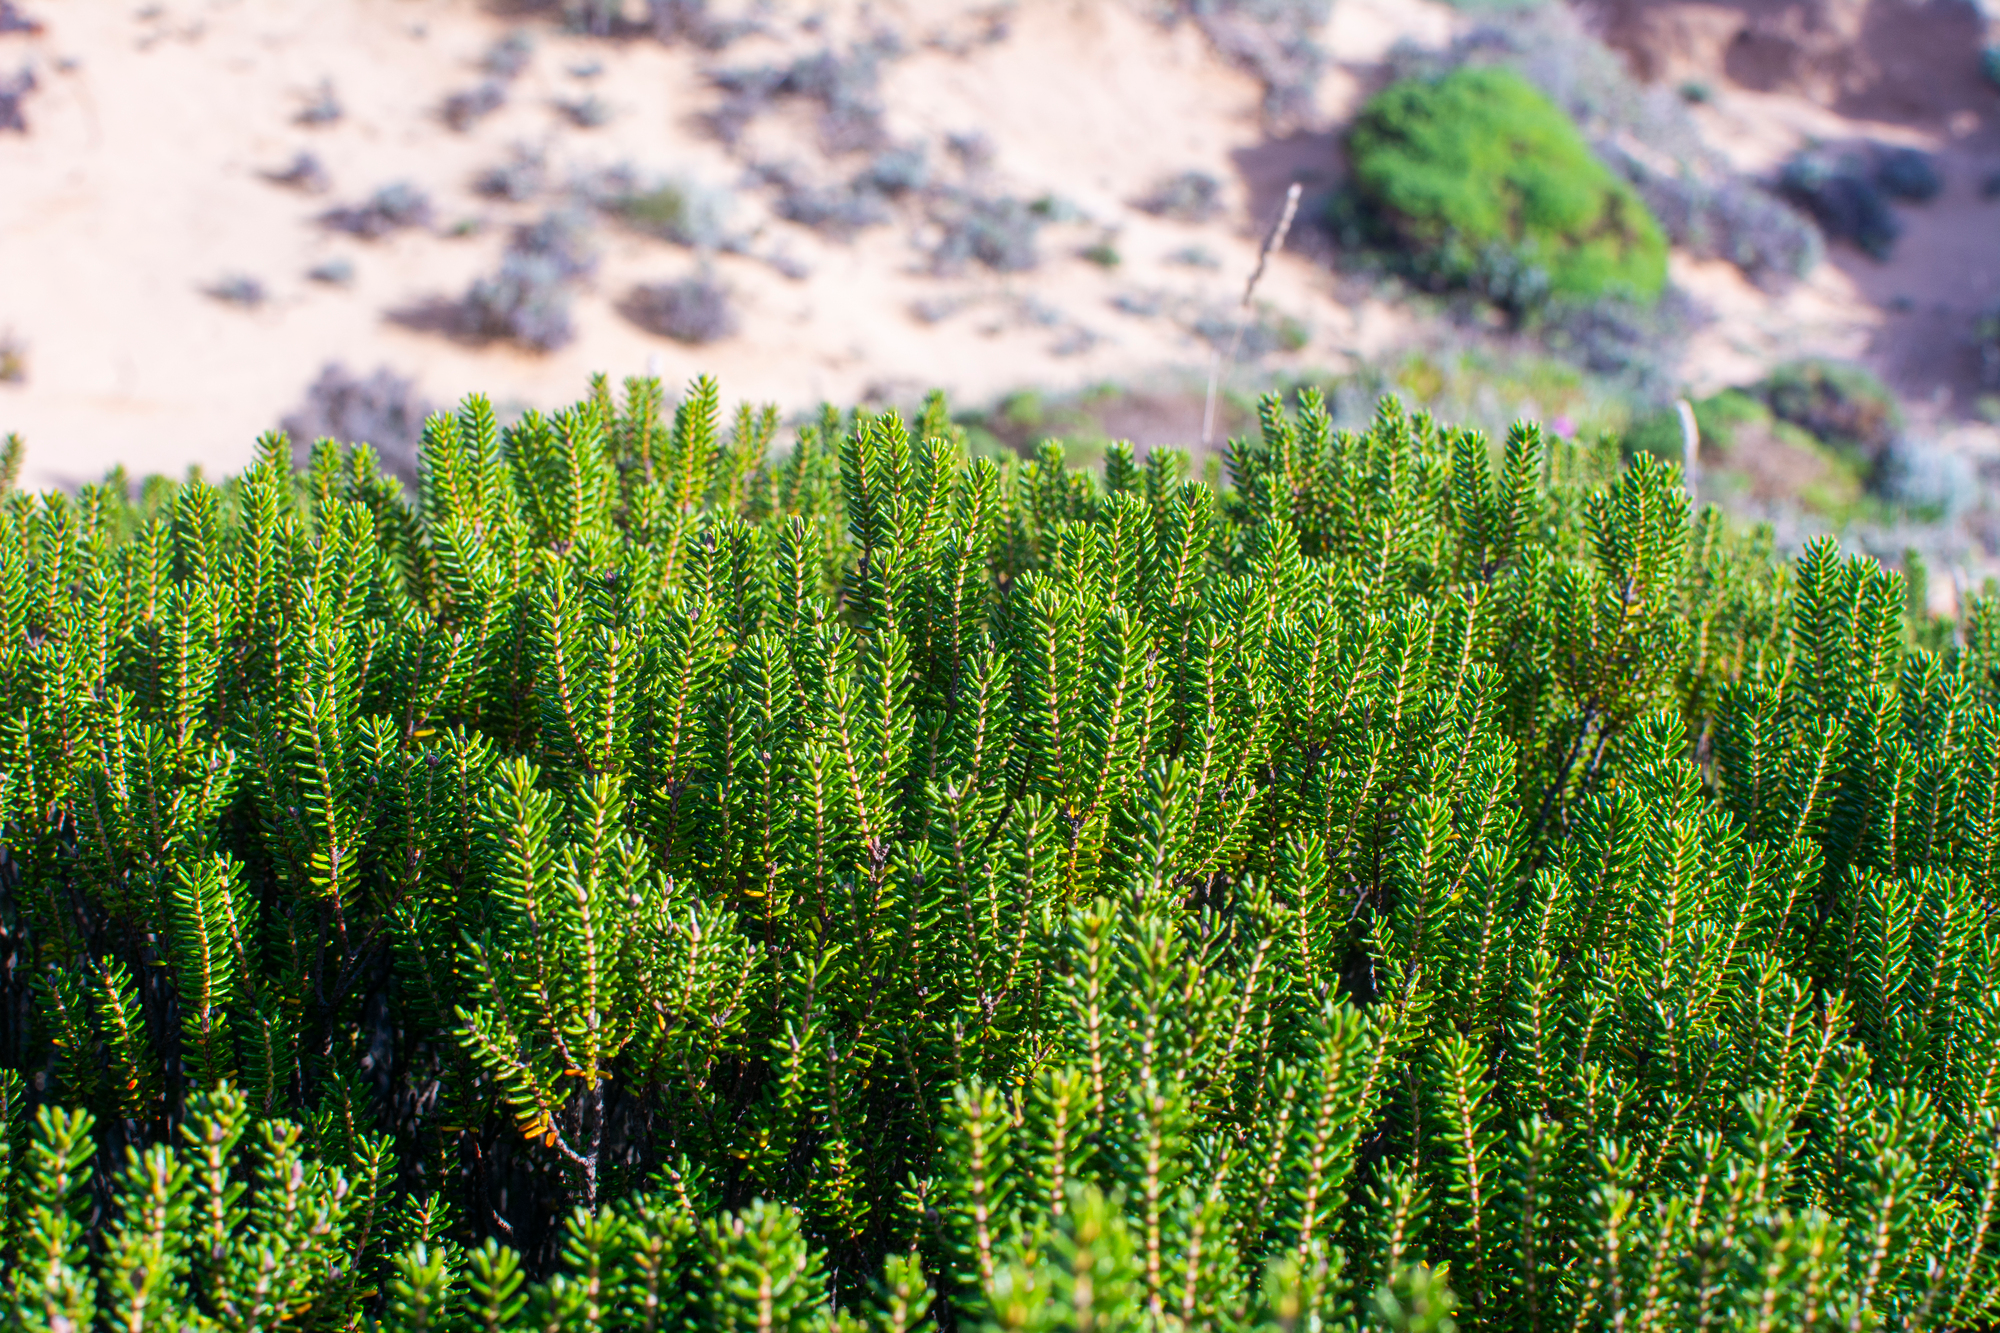 verdant shrubbery overlooking a sandy terrain.